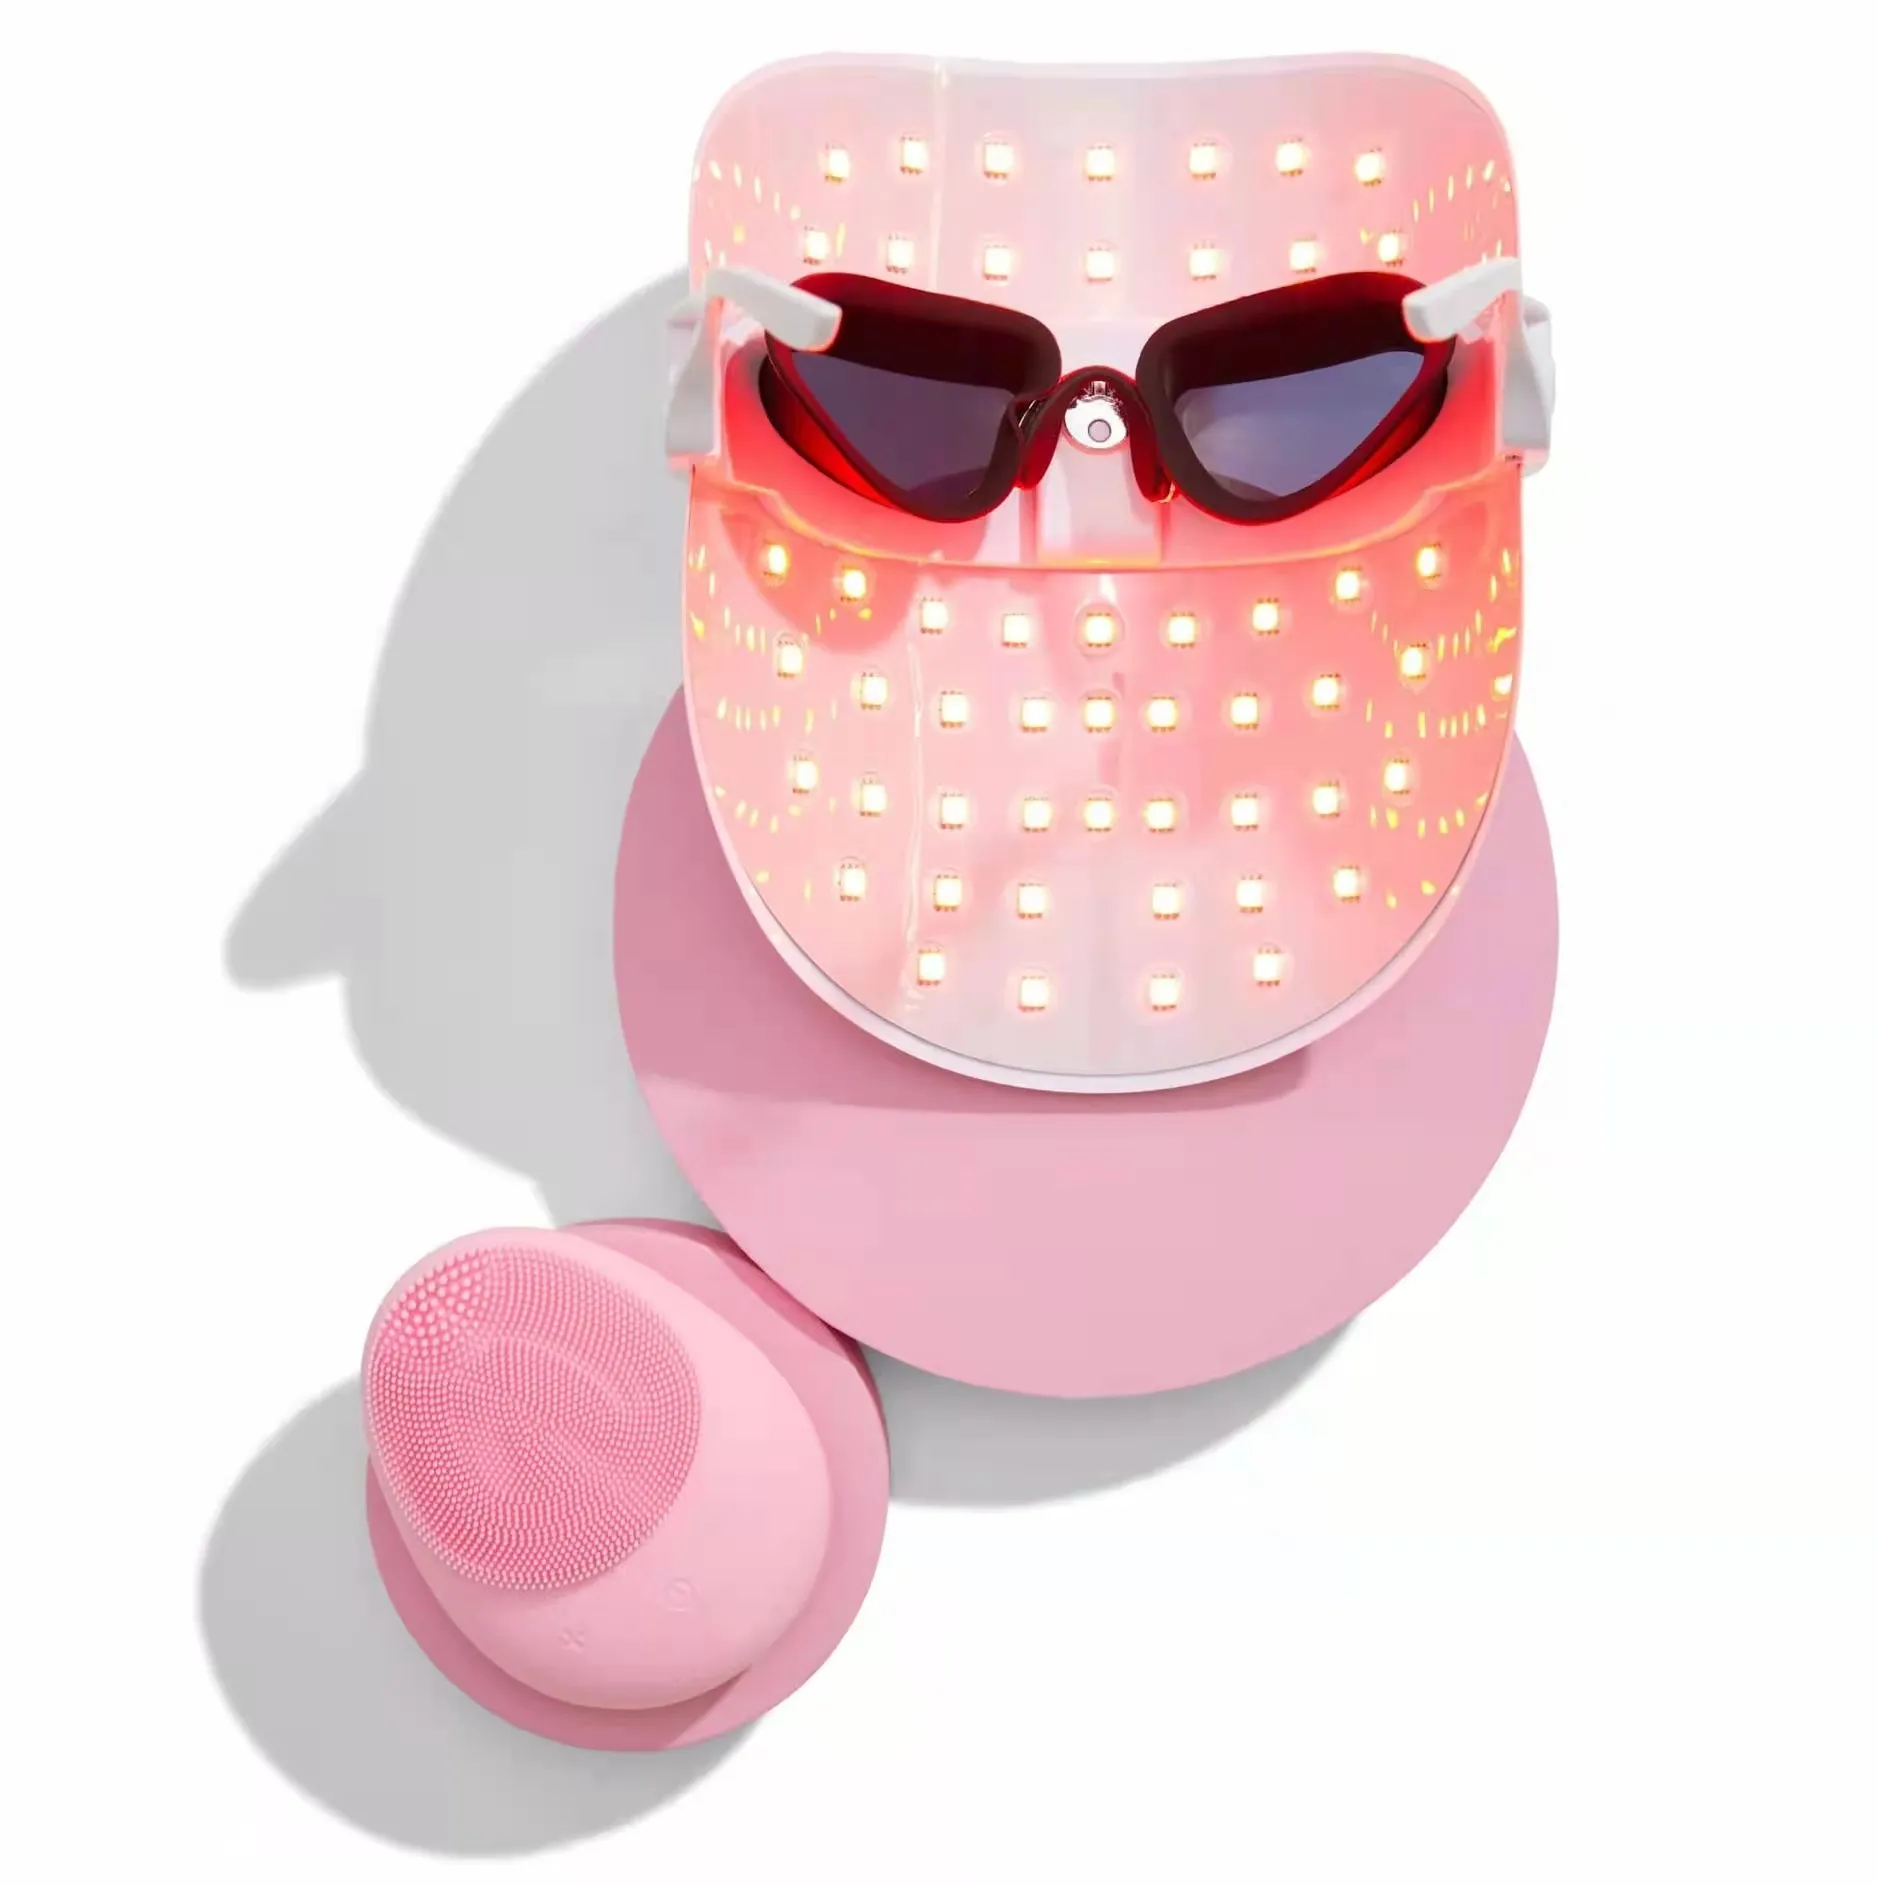 Beauty SPA trattamento 7 colori maschera LED luce rossa terapia viso dispositivo maschera facciale